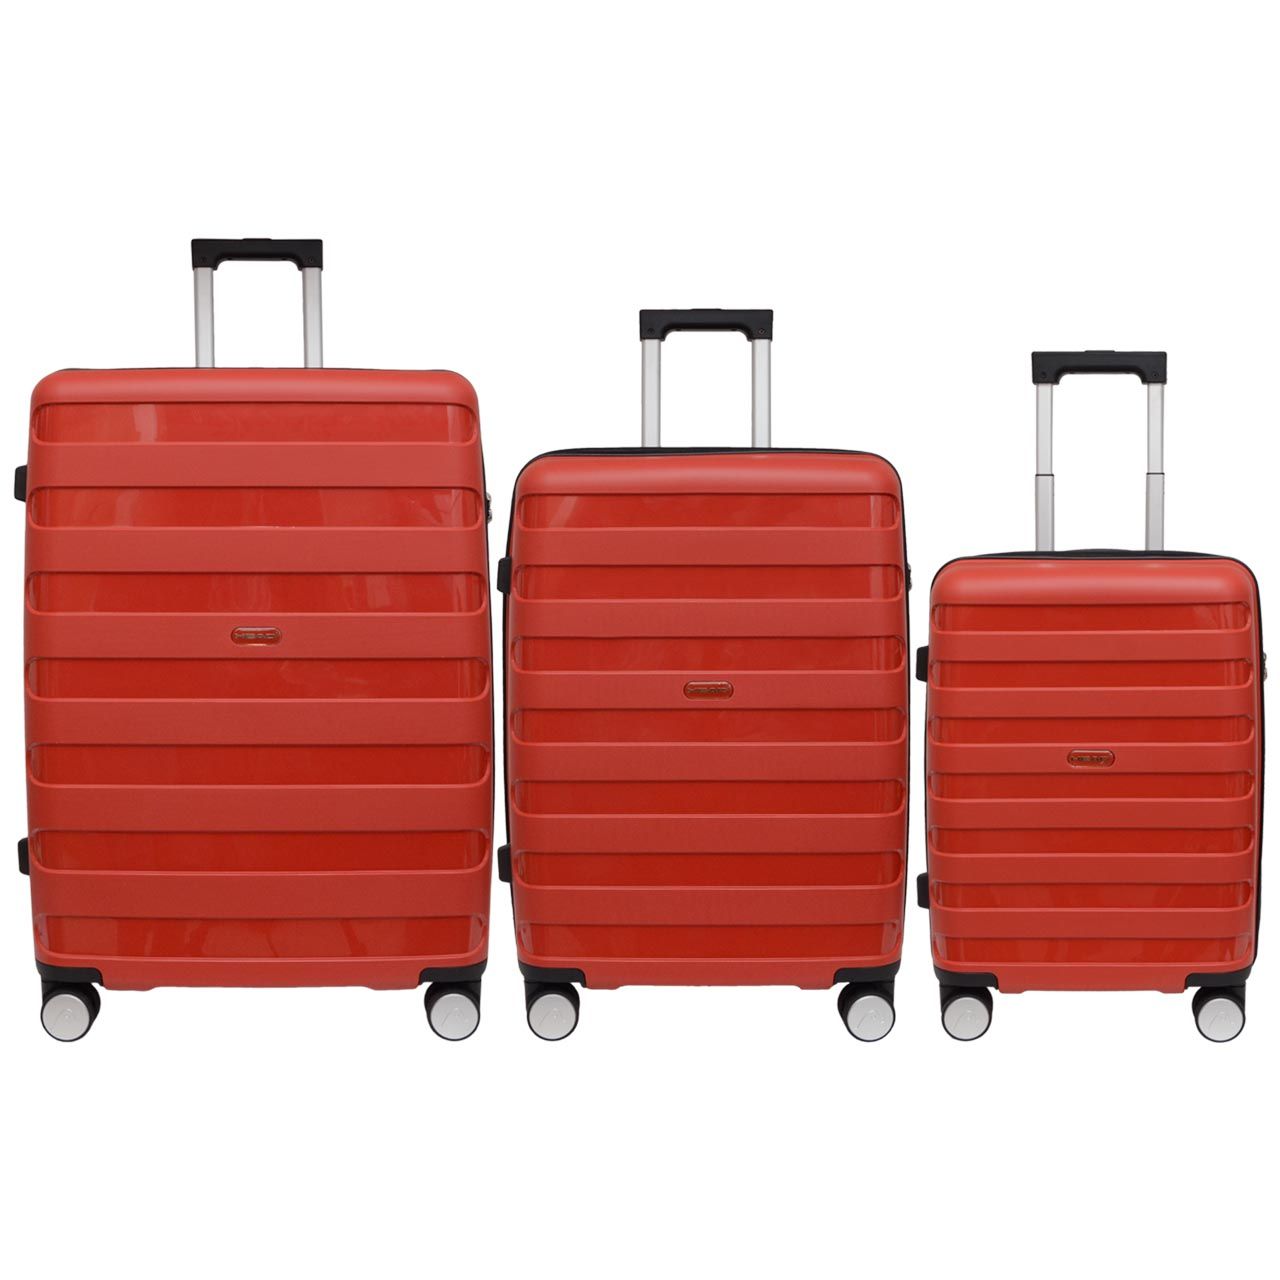 مجموعه سه عددی چمدان هد مدل HL 004 -  - 5